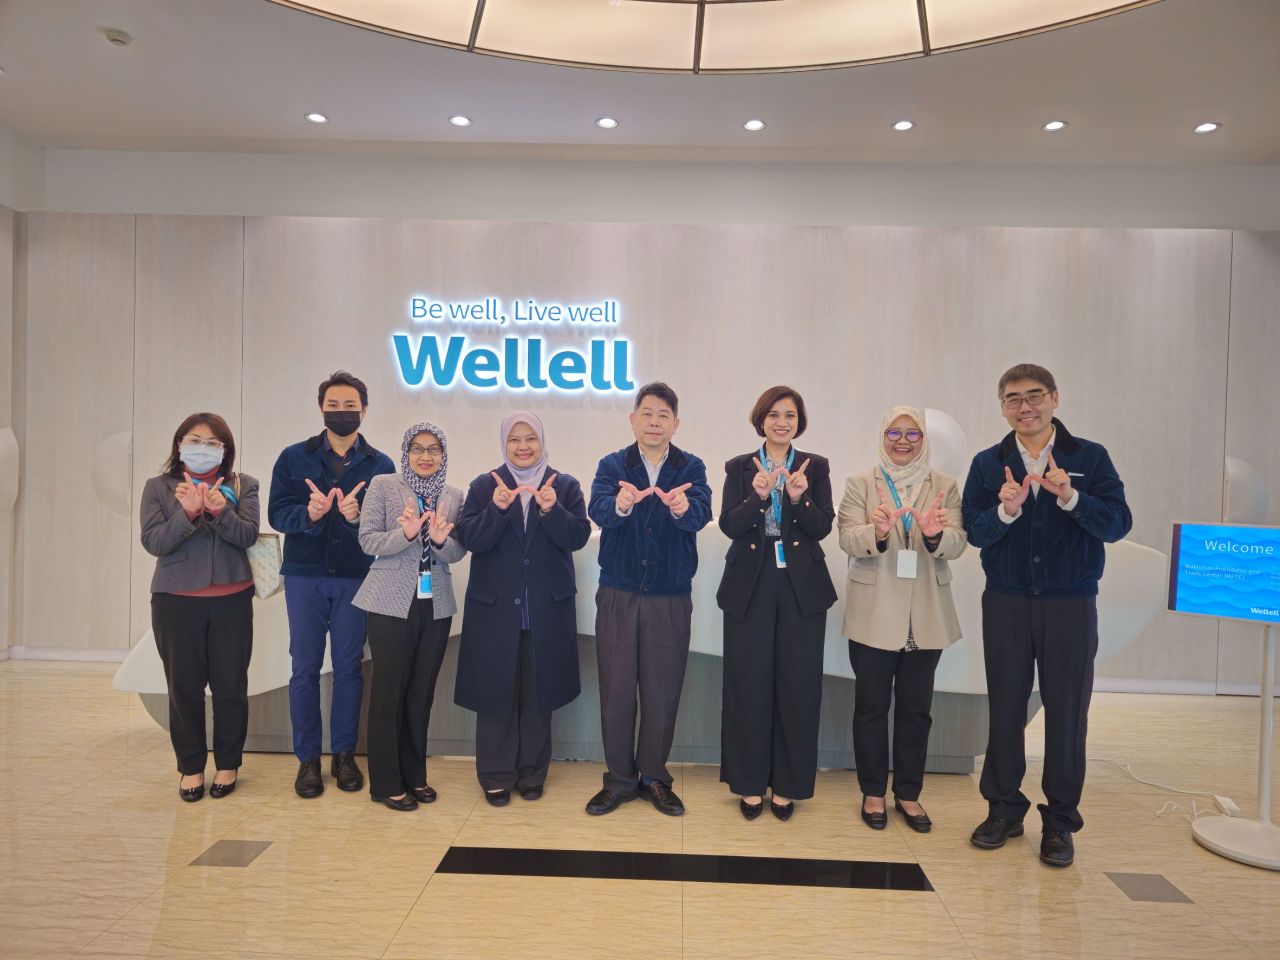 ¡Bienvenido al Centro de Amistad y Comercio de Malasia para visitar Wellell!